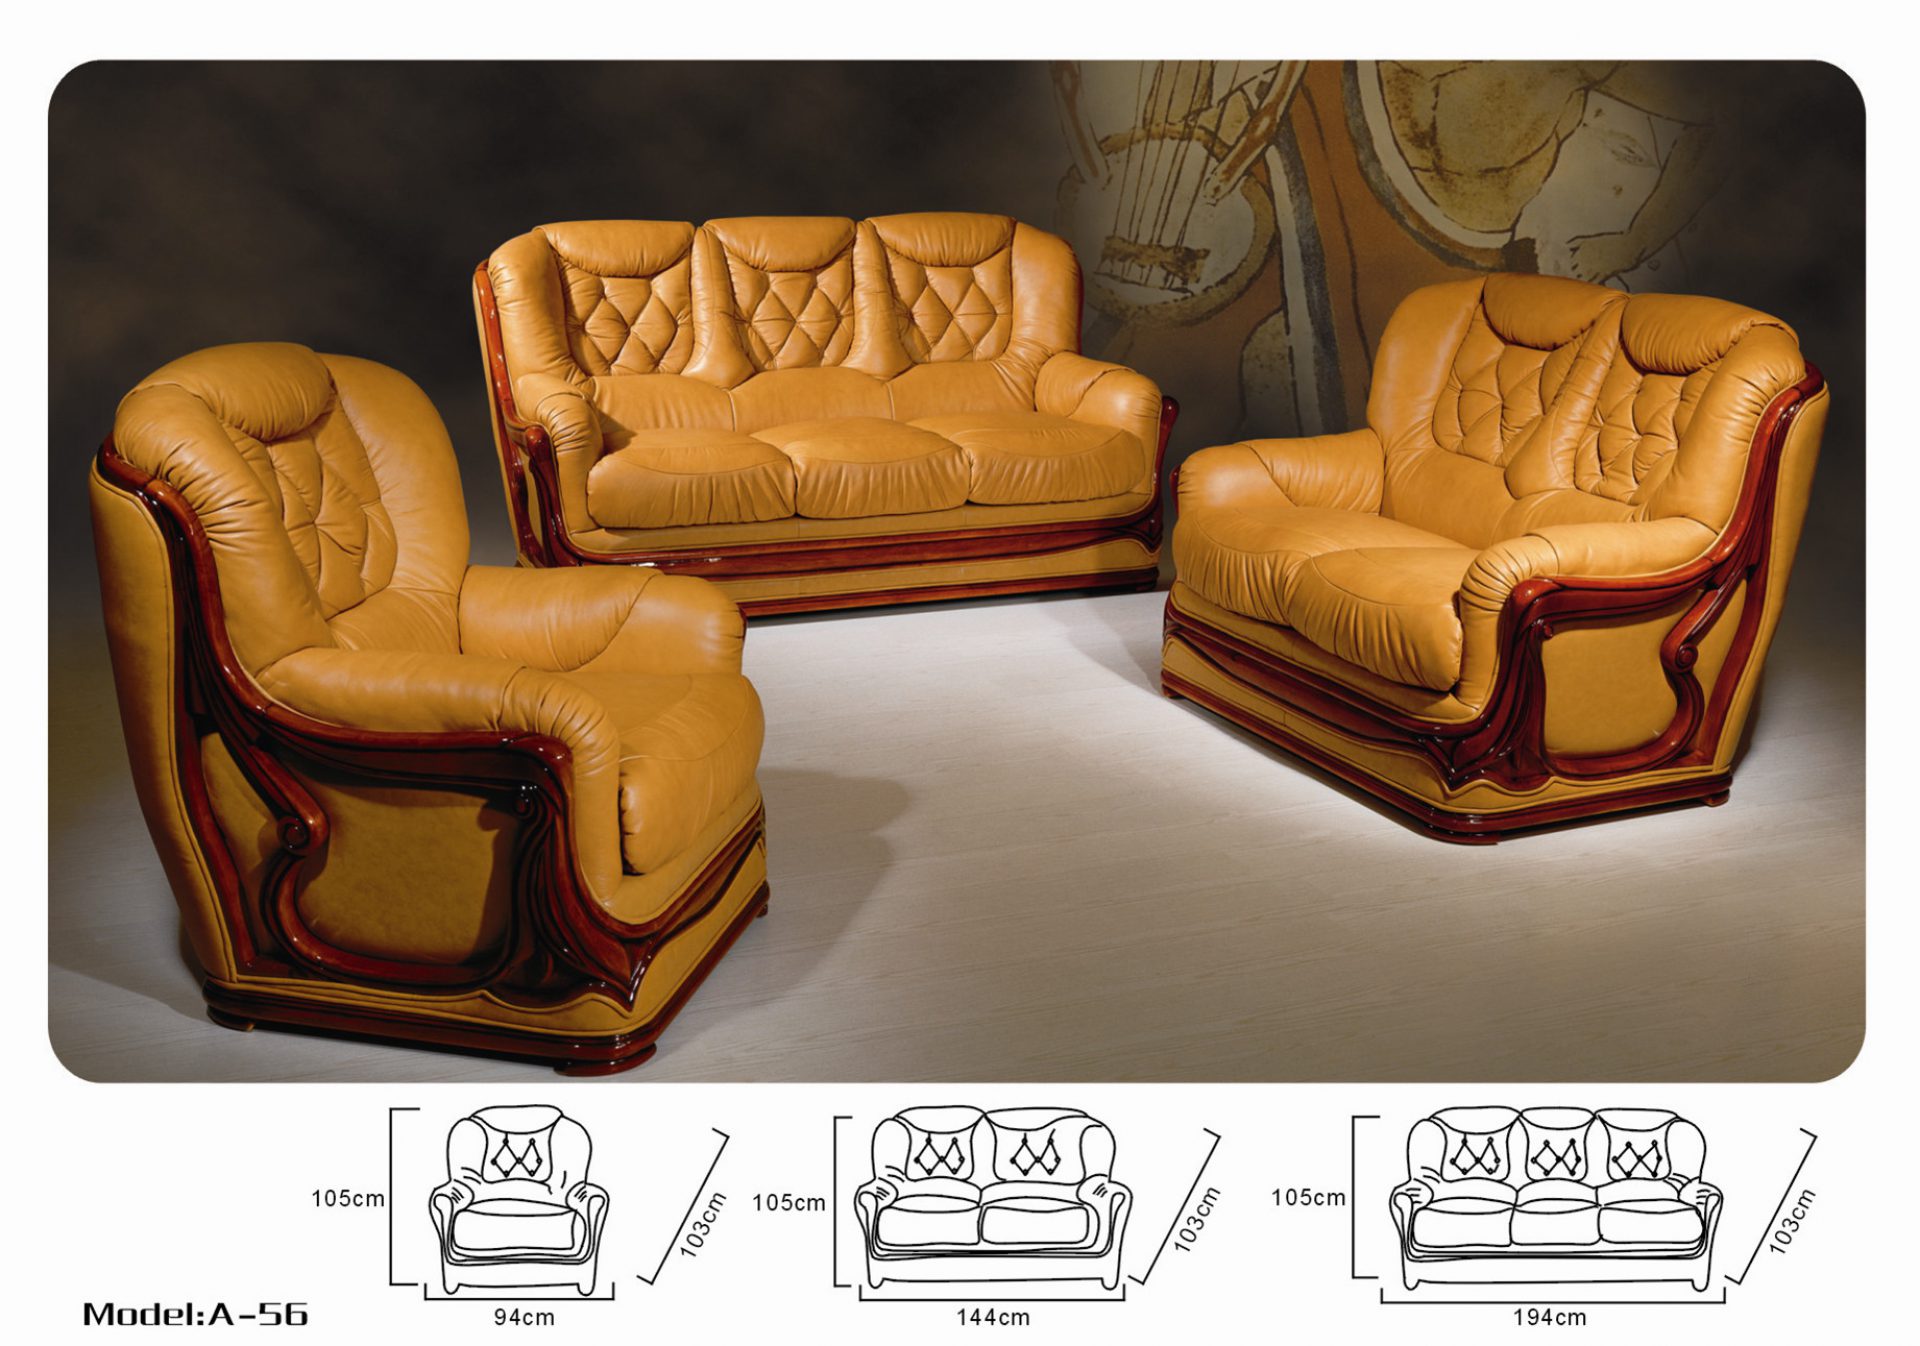 Наборы мебели диван 2 кресла. Кожаное кресло Кинг( Консул 2020). Комплект мягкой мебели "Chester" vch002\. Мебель Версаче комплект диван кресло. Диван и два кресла "Кинг" (3м+12+12), натуральная кожа № 1060.